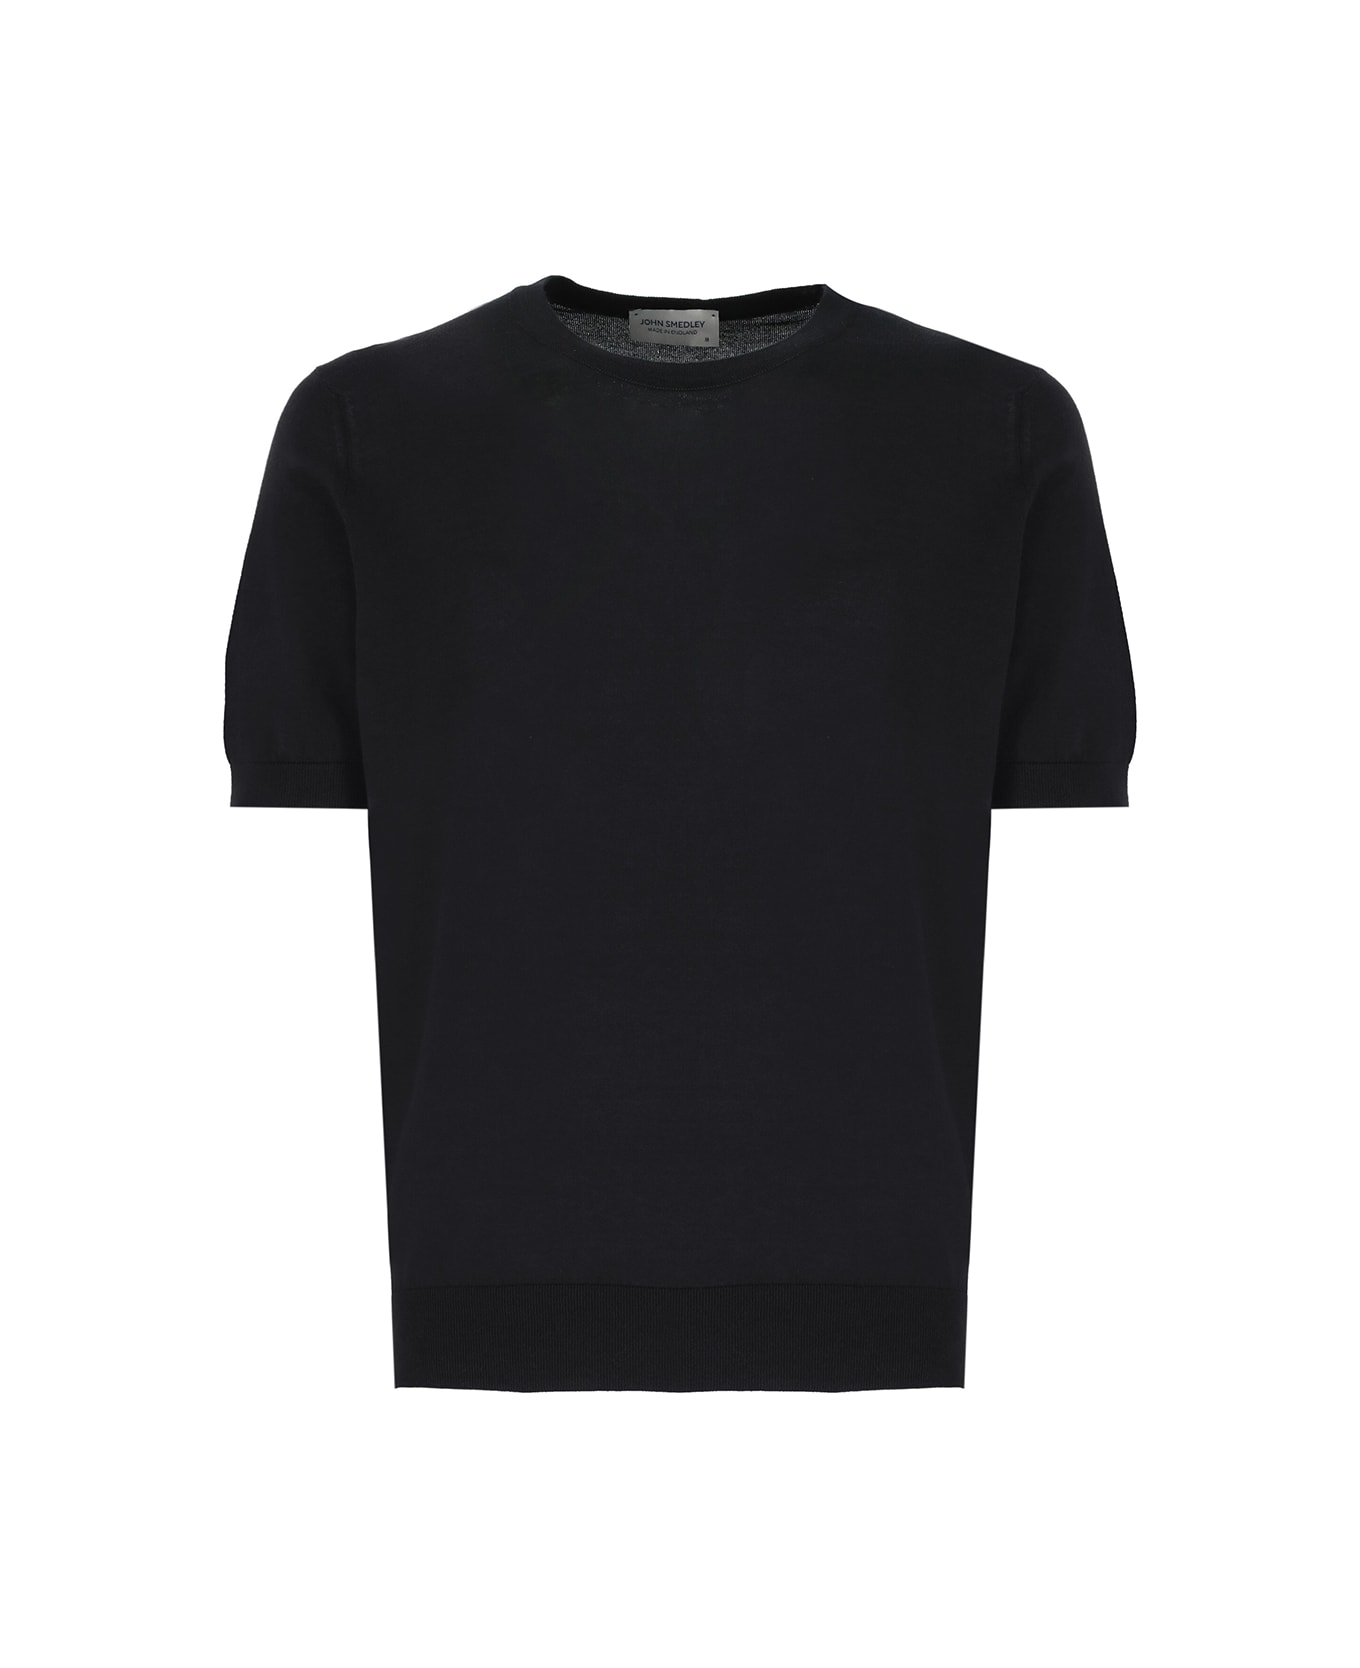 John Smedley Kempton T-shirt - Black